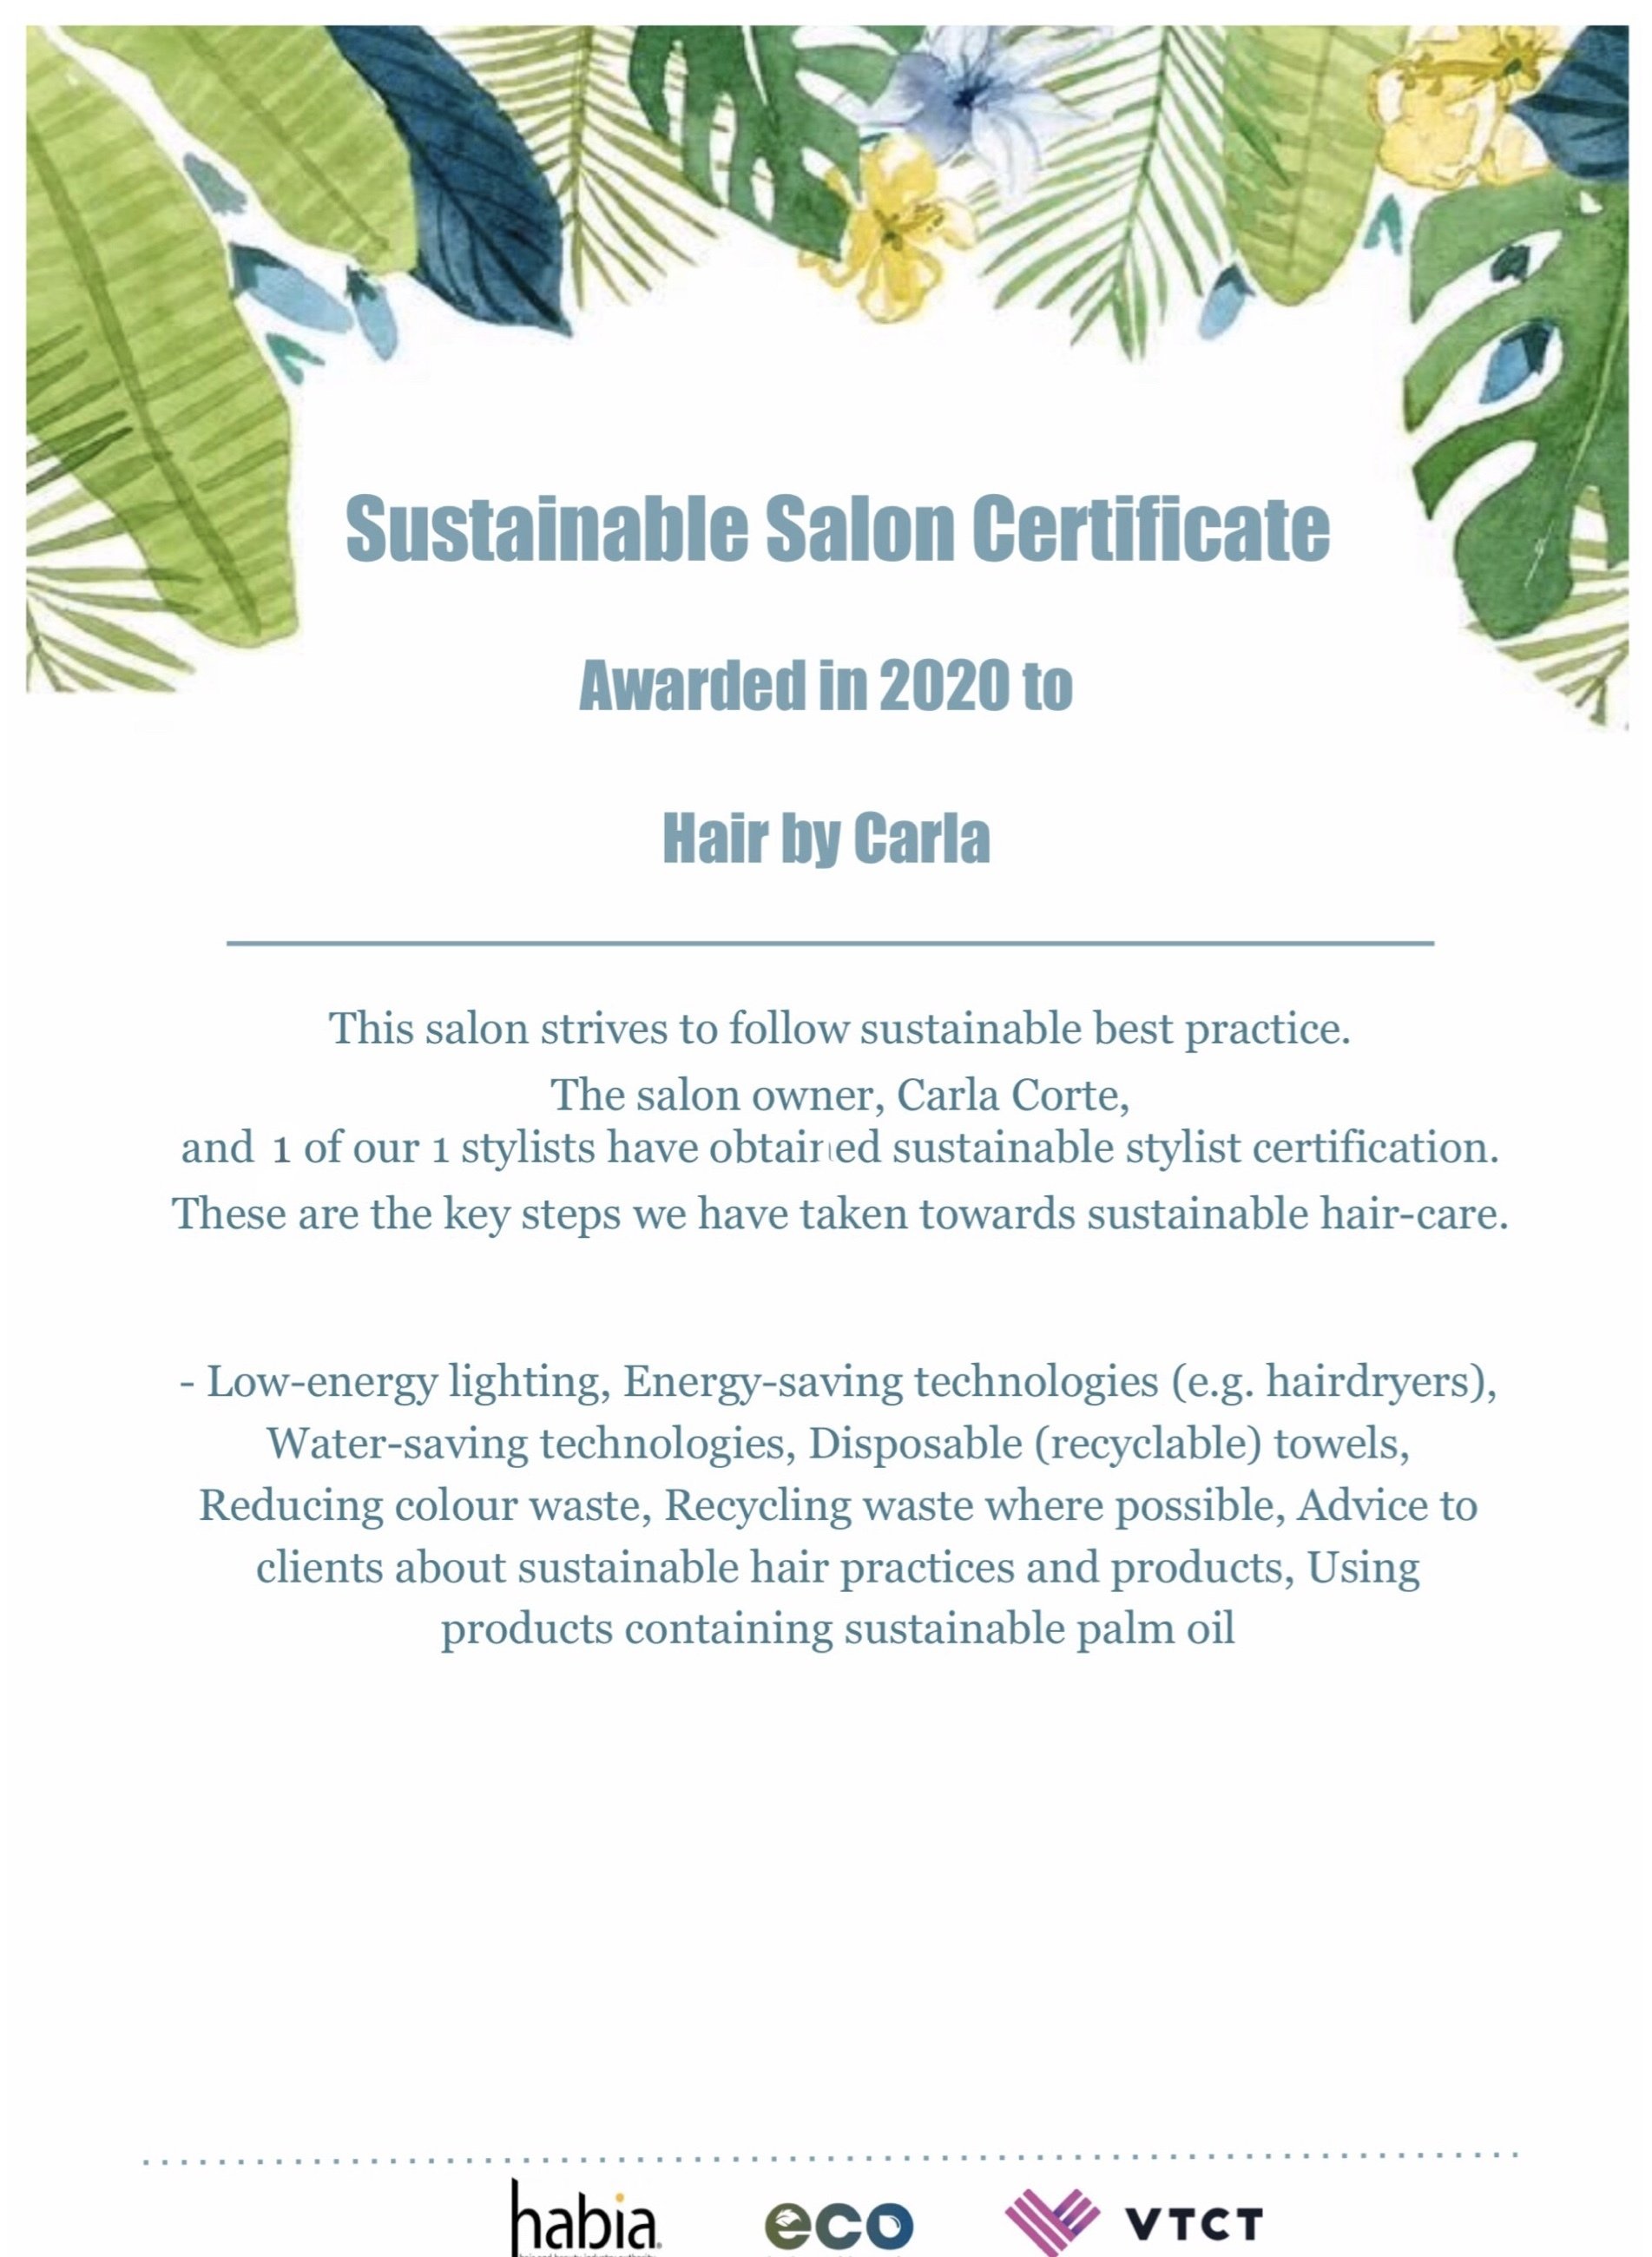 Sustainable Salon 2020